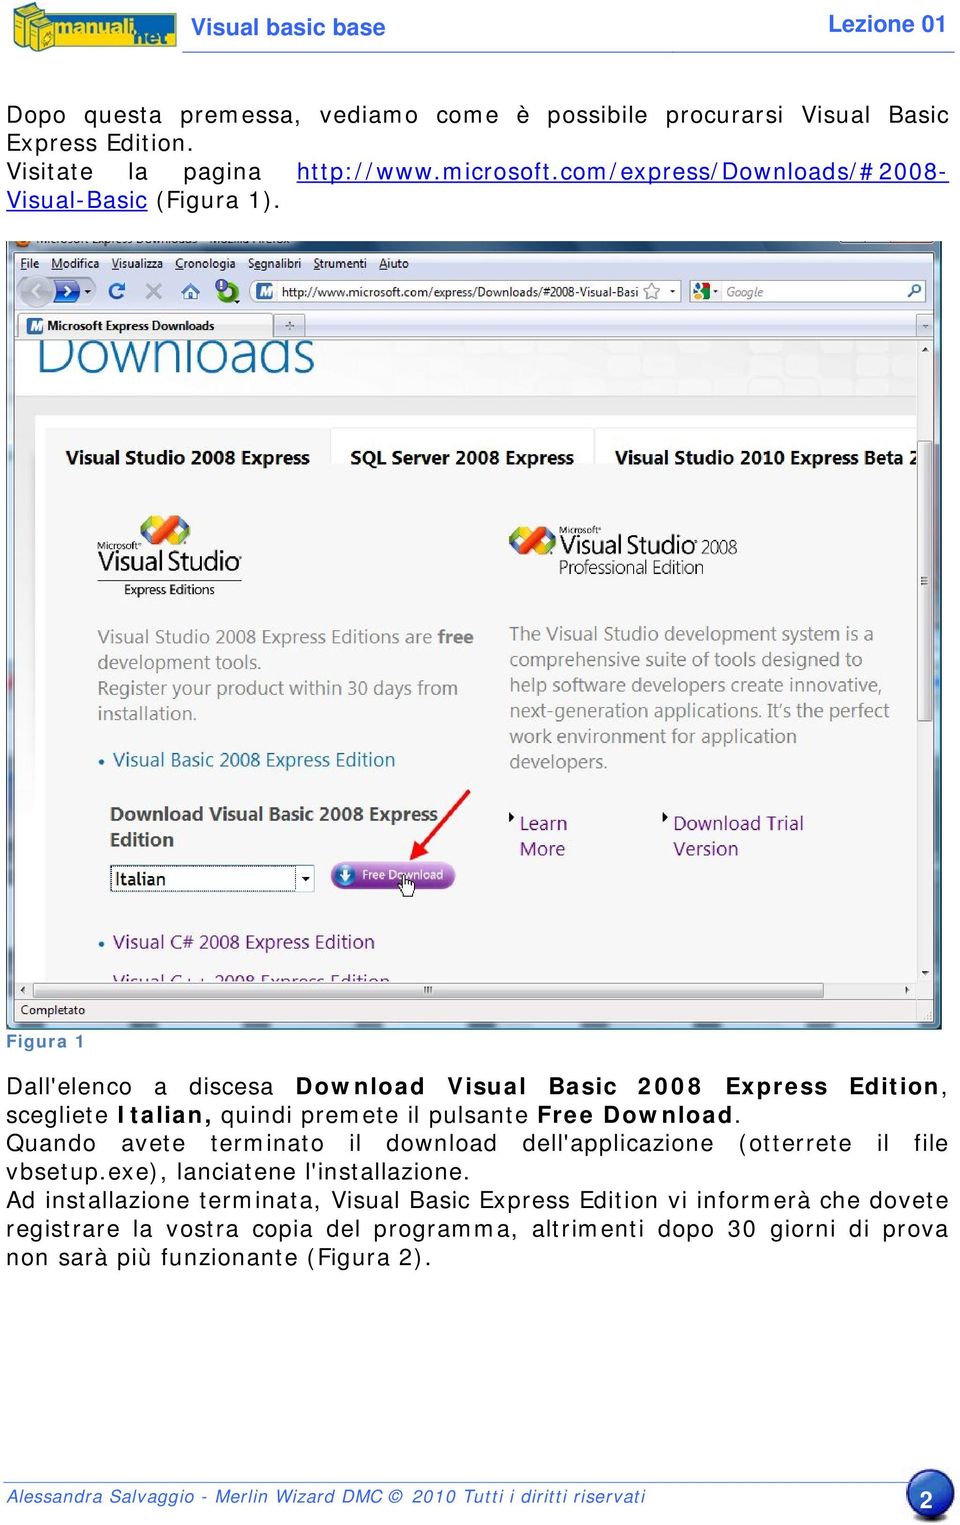 Figura 1 Dall'elenco a discesa Download Visual Basic 2008 Express Edition, scegliete Italian, quindi premete il pulsante Free Download.